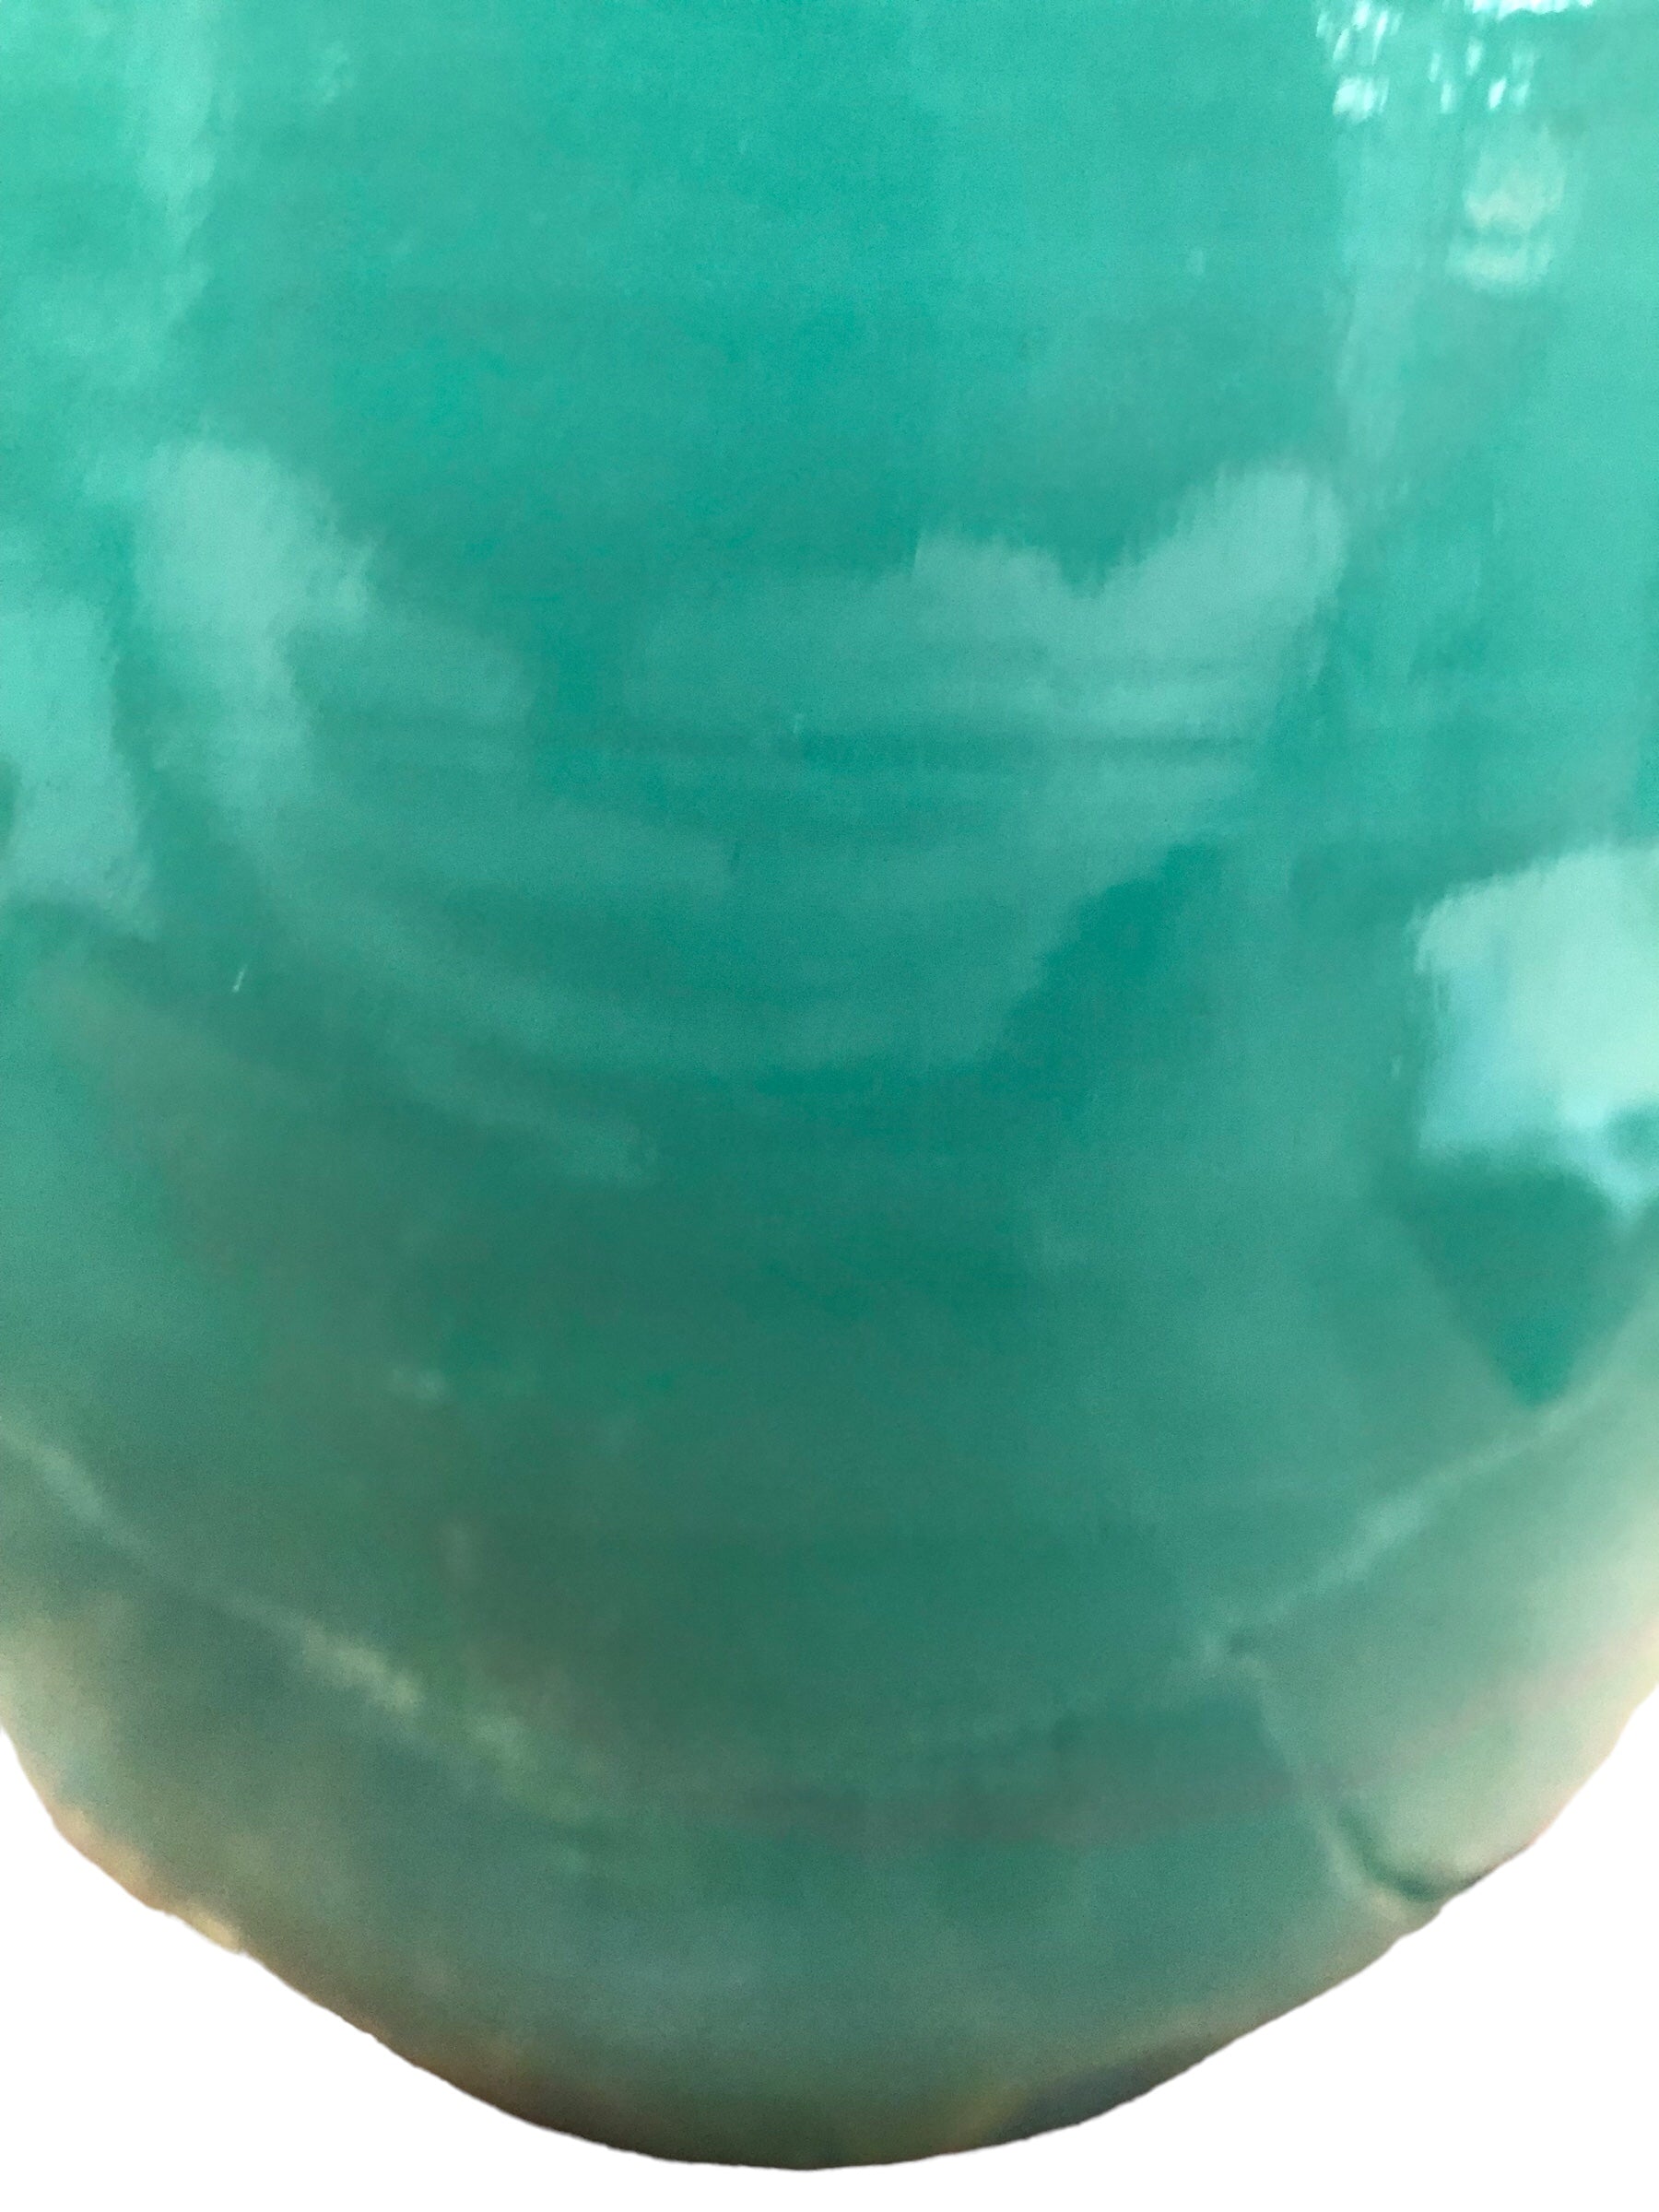 Plastic turquoise/ wood look floor vase